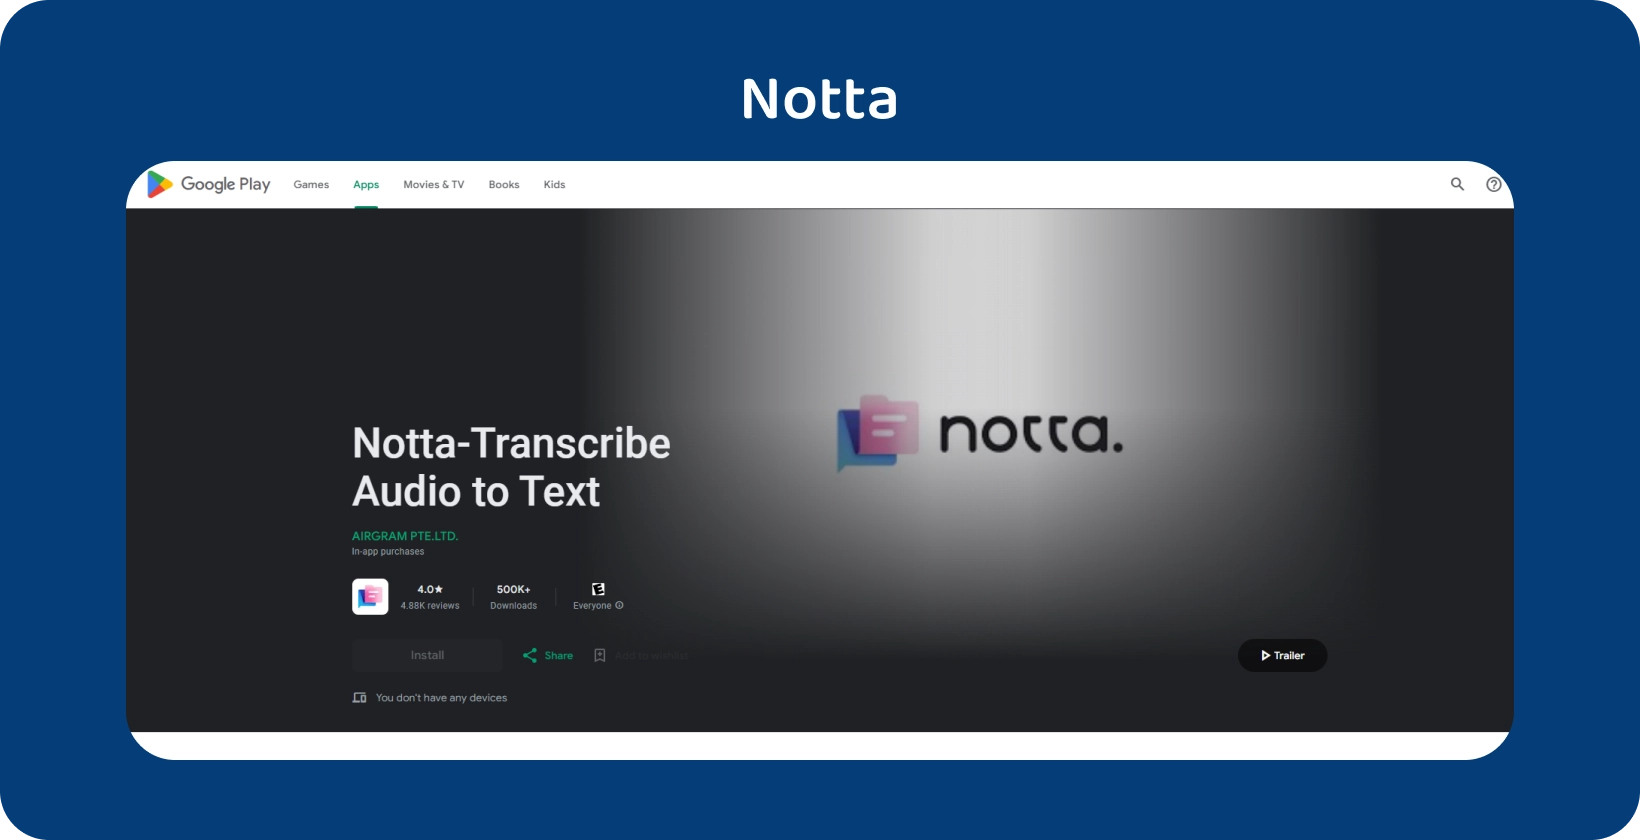 Aplicación Notta.ai en Google Play, que muestra su capacidad para transcribir audio a texto con precisión en Android.